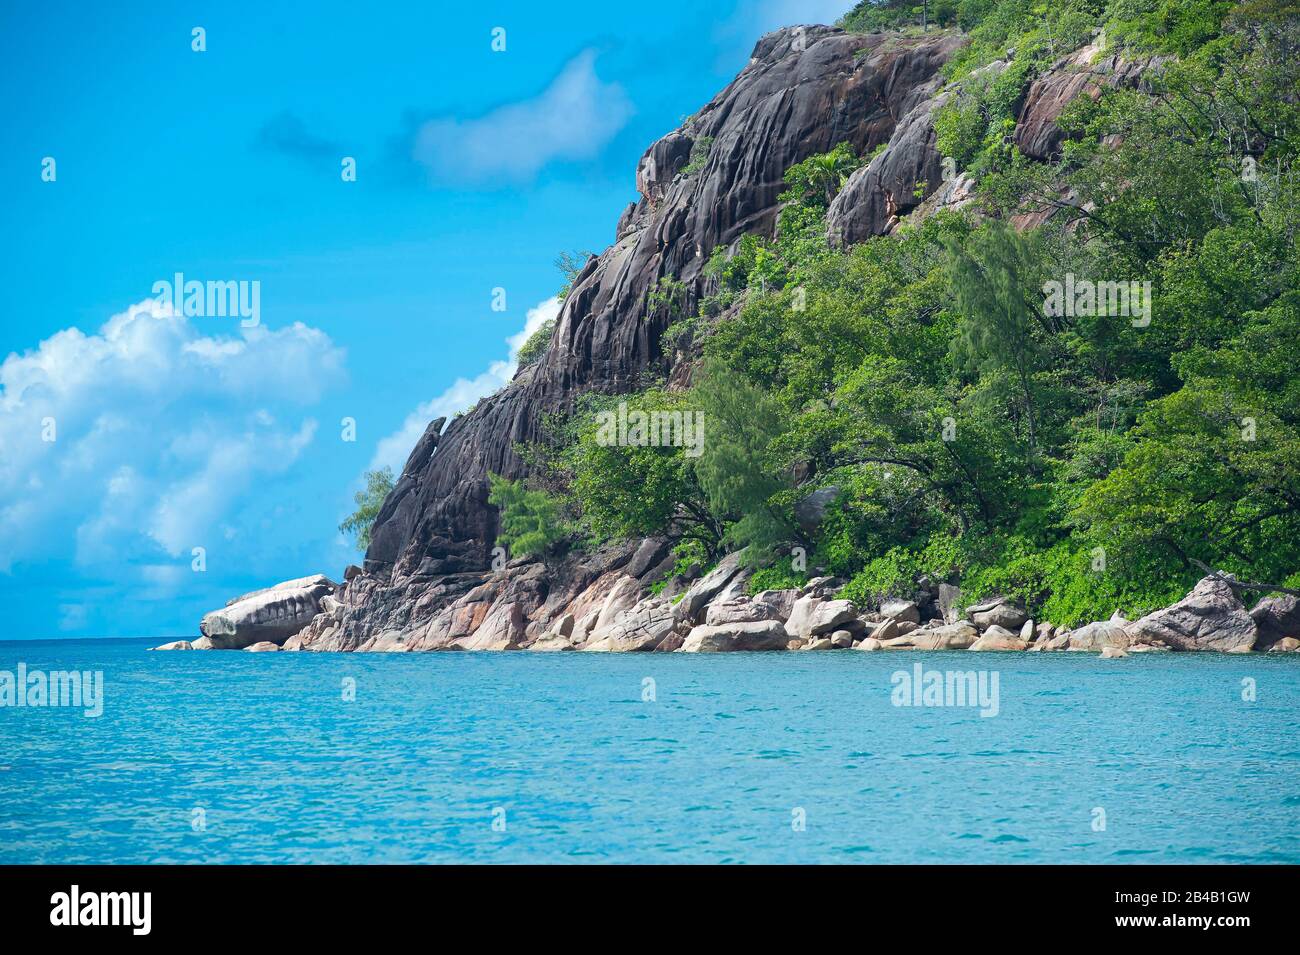 Seychelles, Praslin Island, Caiman Point on Curieuse Island Stock Photo